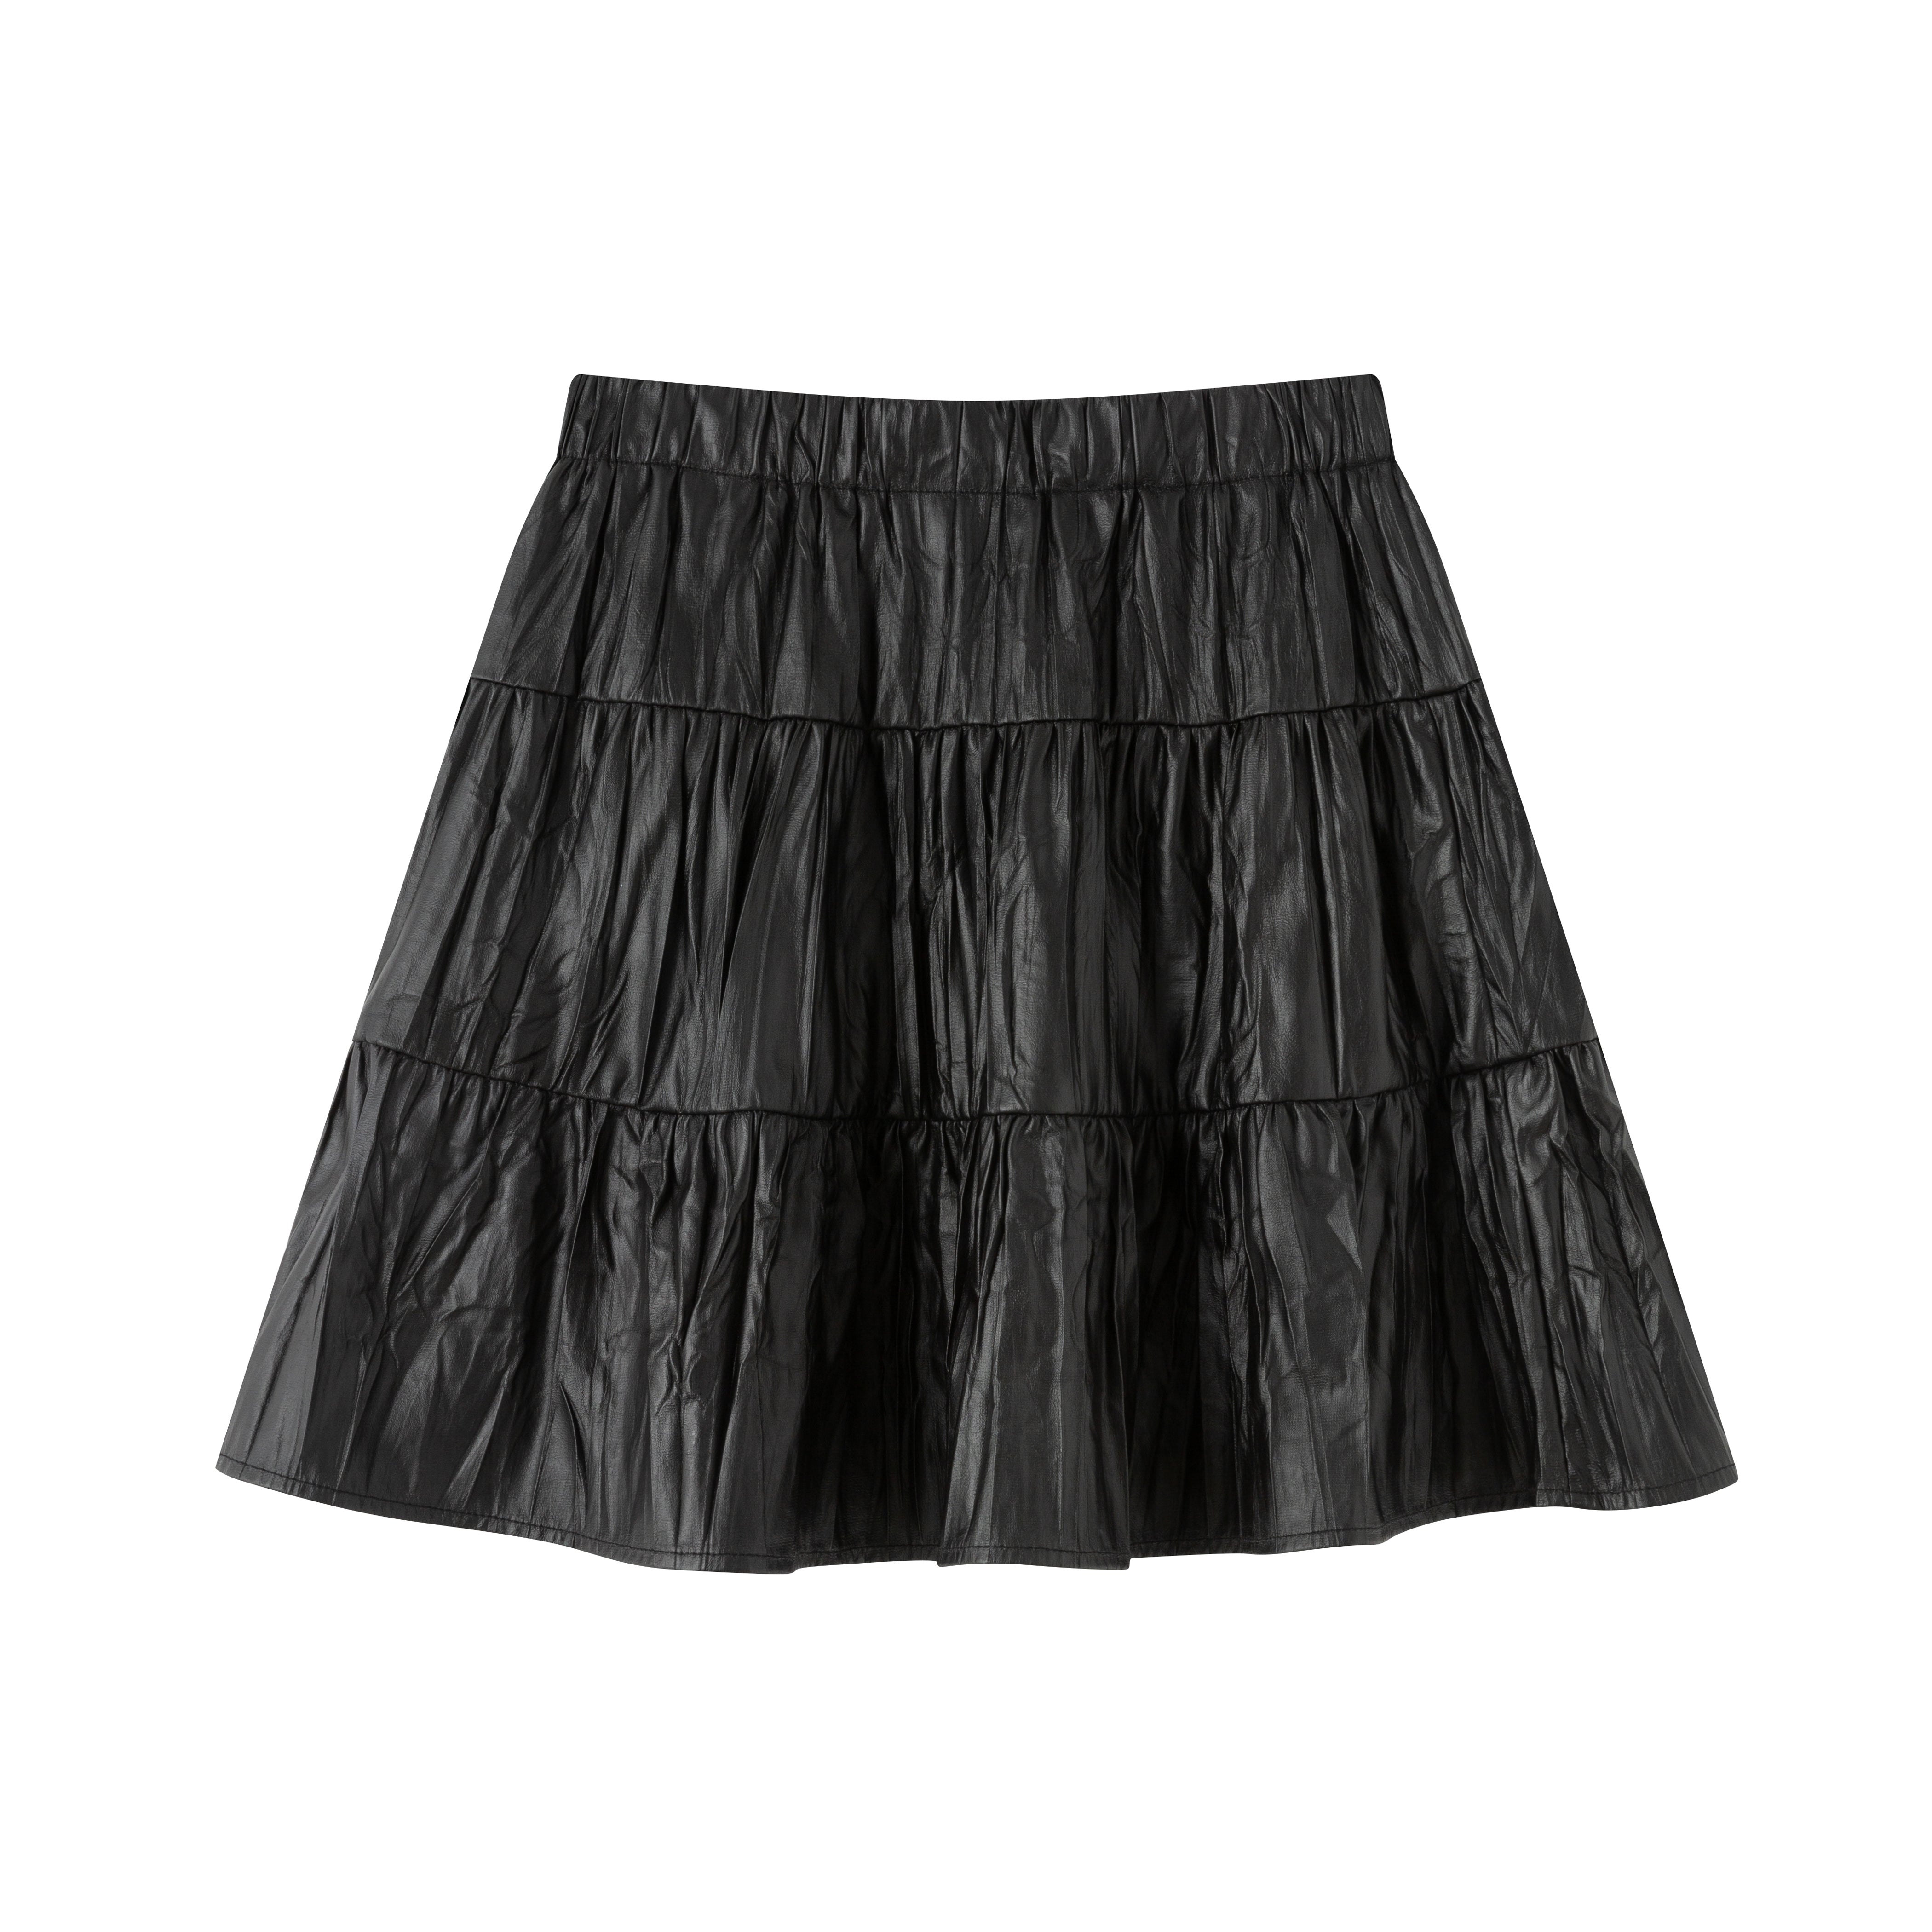 Crinkled A-line skirt